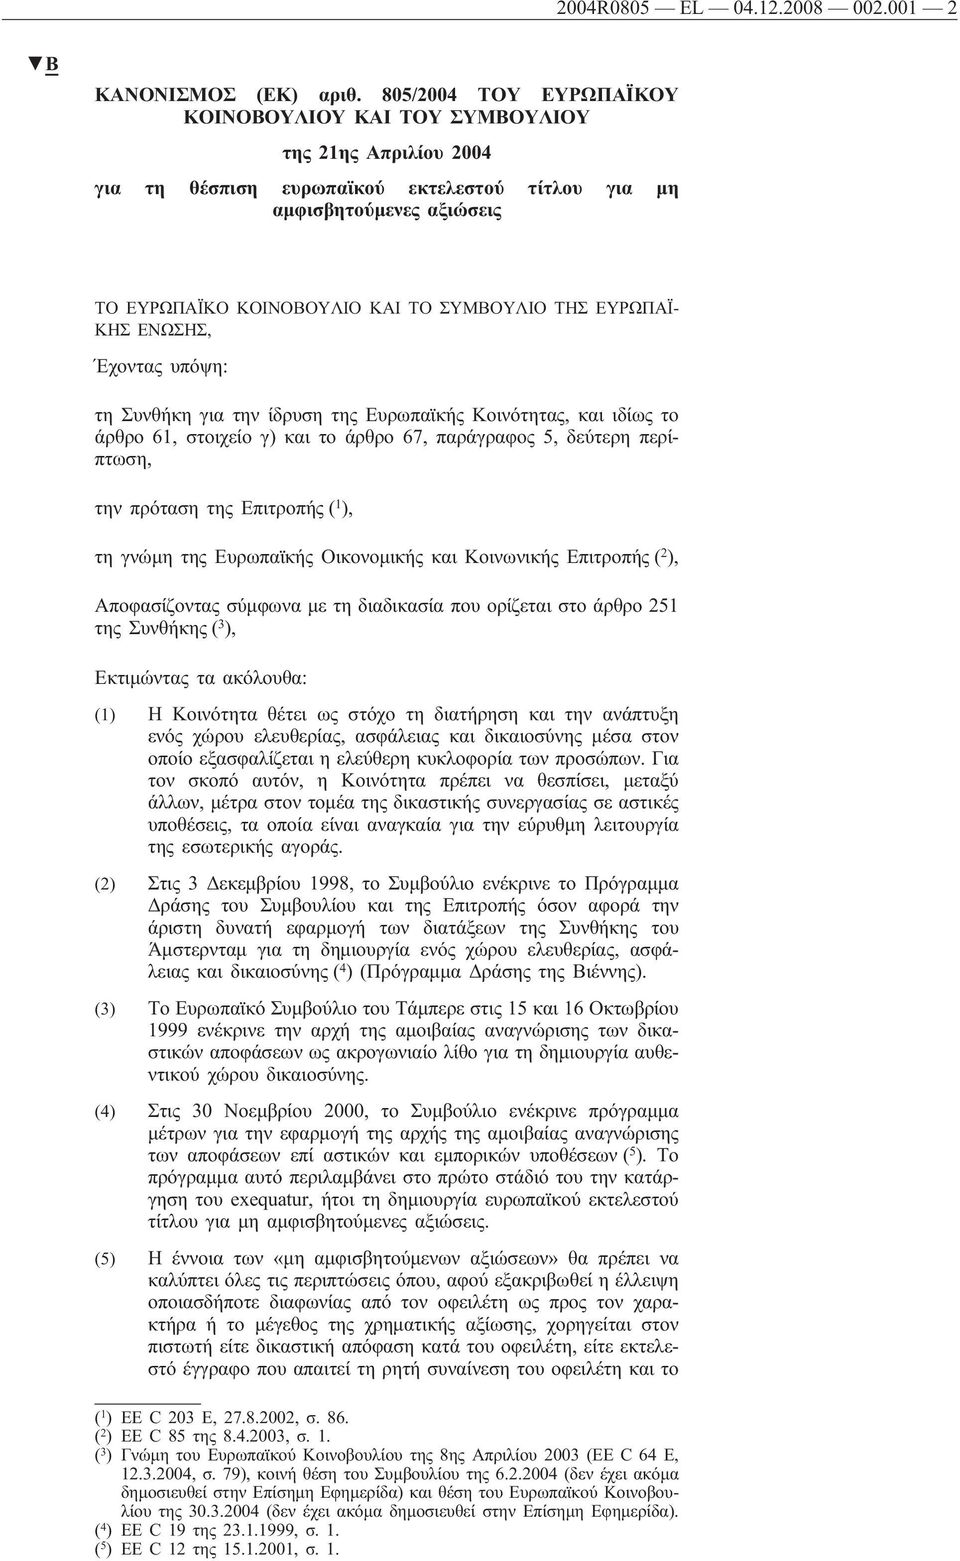 ΤΗΣ ΕΥΡΩΠΑΪ- ΚΗΣ ΕΝΩΣΗΣ, Έχοντας υπόψη: τη Συνθήκη για την ίδρυση της Ευρωπαϊκής Κοινότητας, και ιδίως το άρθρο 61, στοιχείο γ) και το άρθρο 67, παράγραφος 5, δεύτερη περίπτωση, την πρόταση της